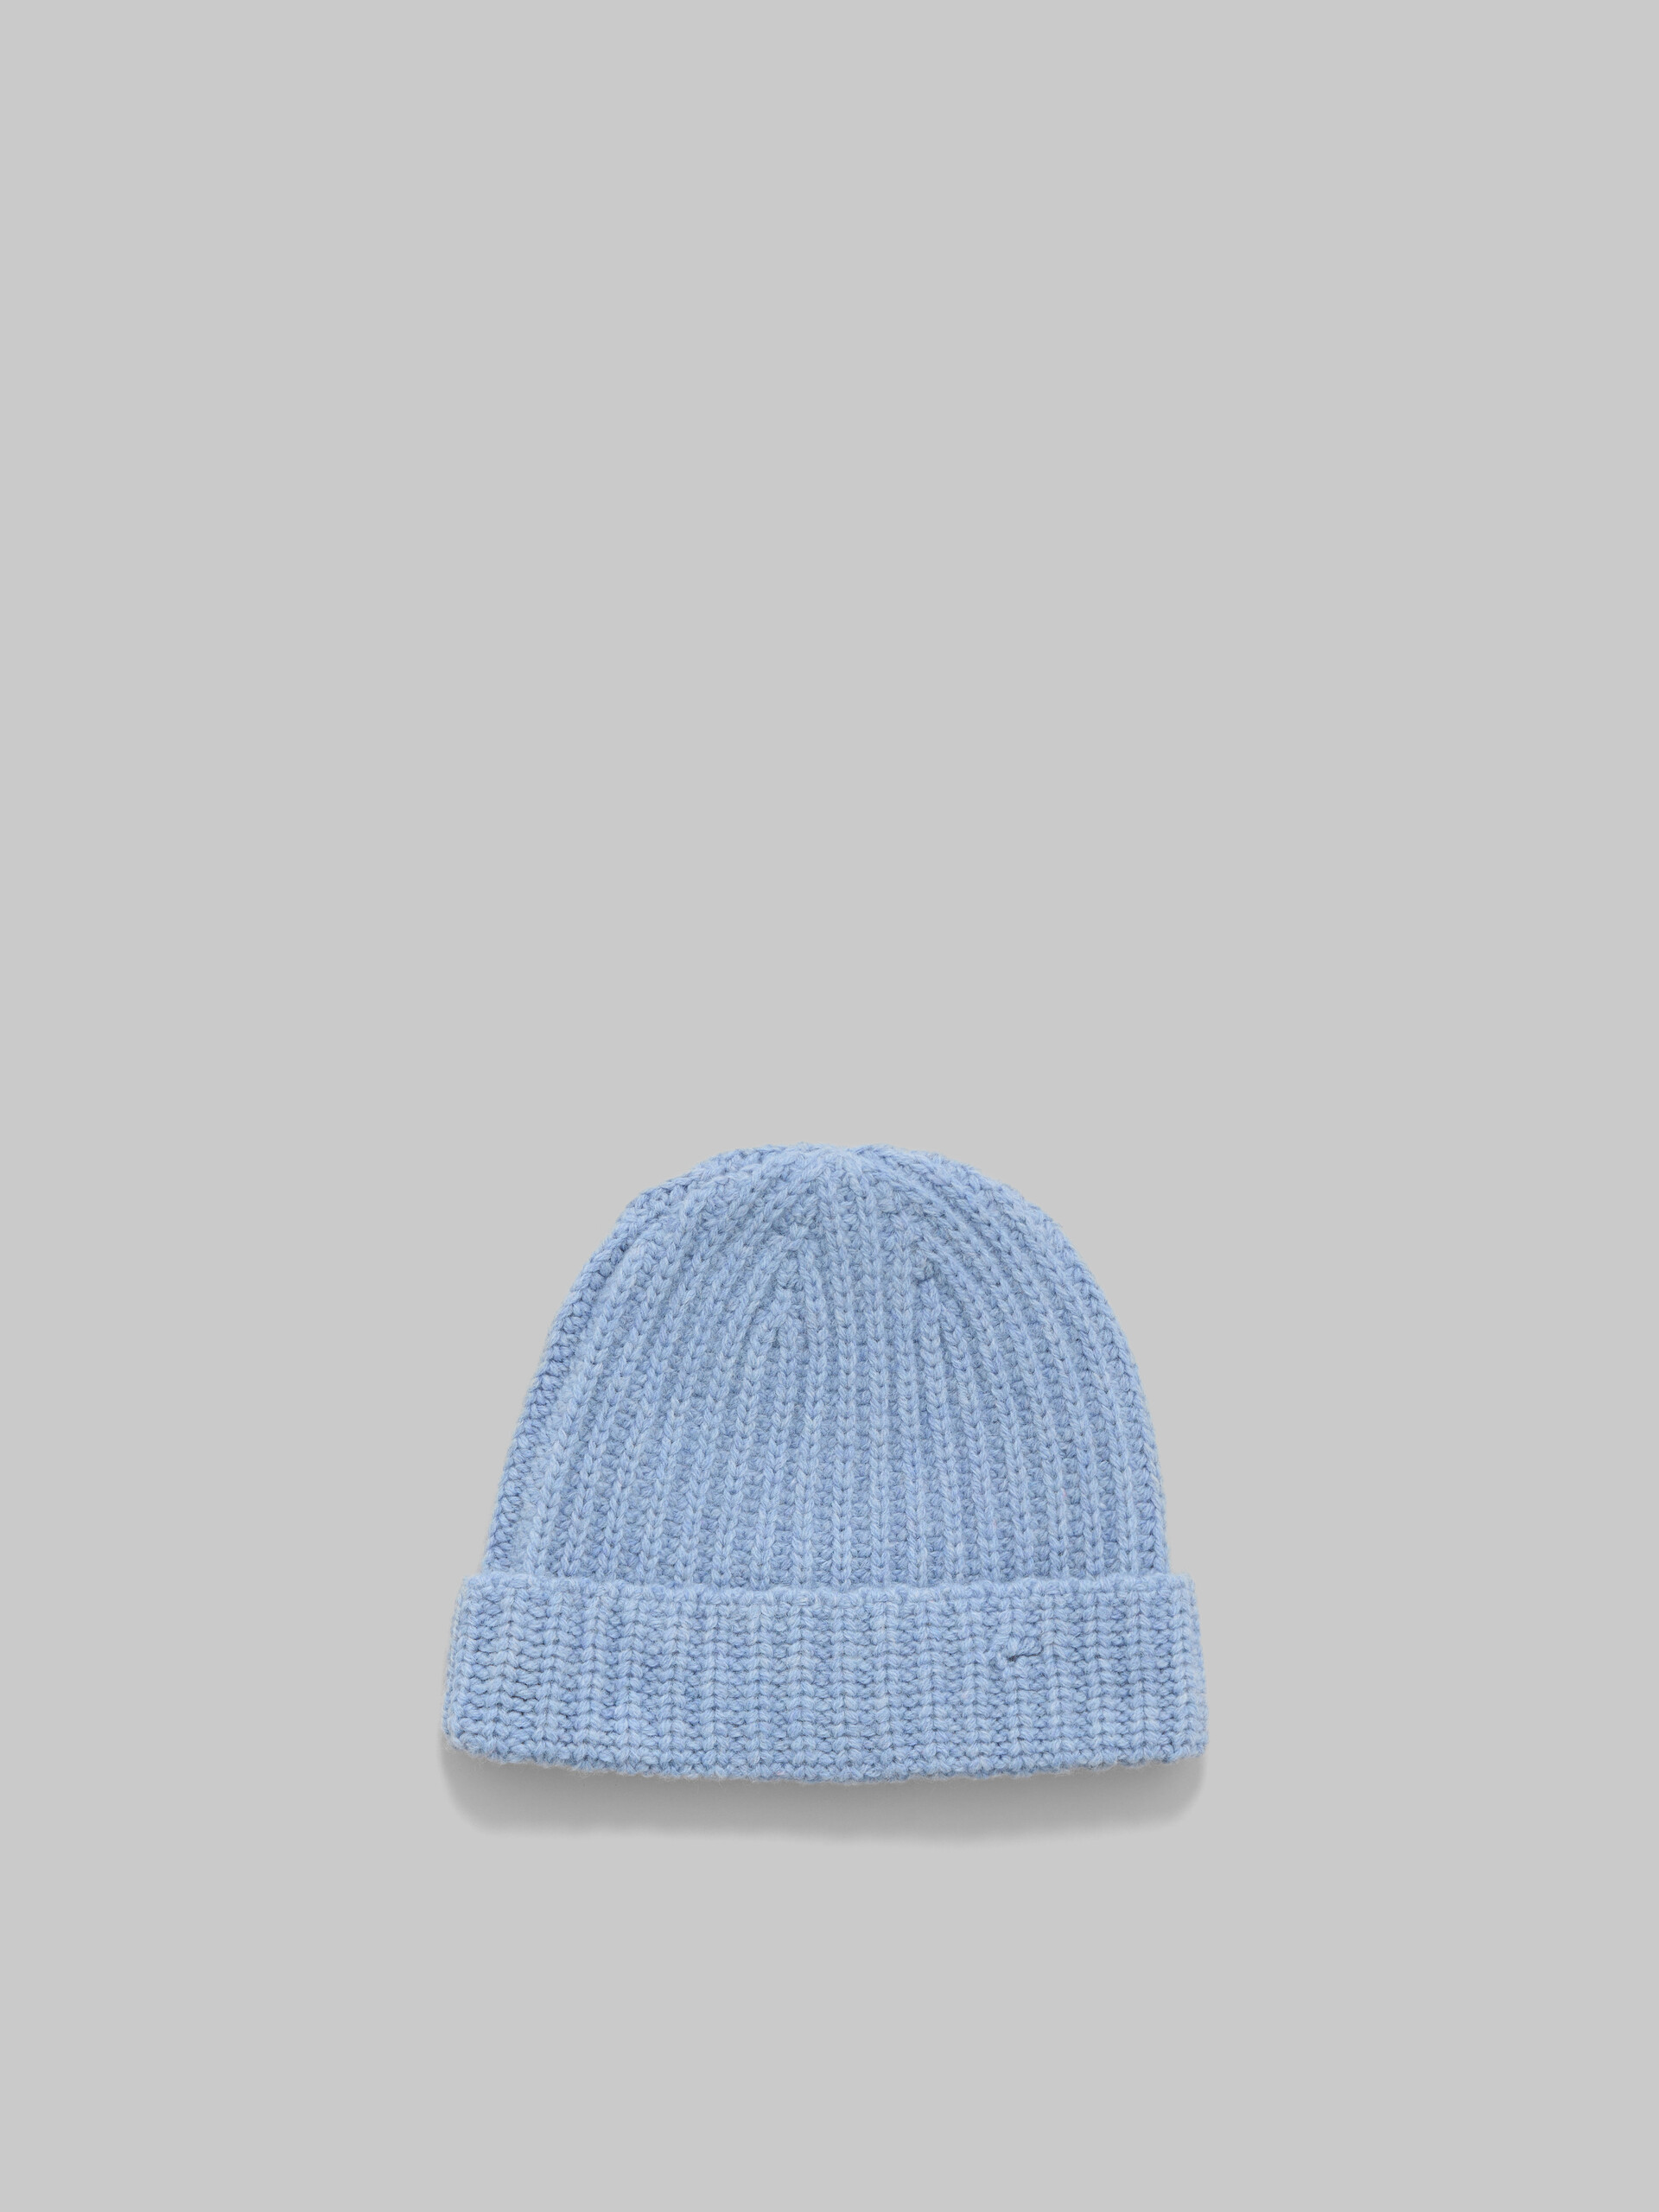 Bonnet en laine Shetland bleue avec effet raccommodé Marni - Chapeau - Image 3